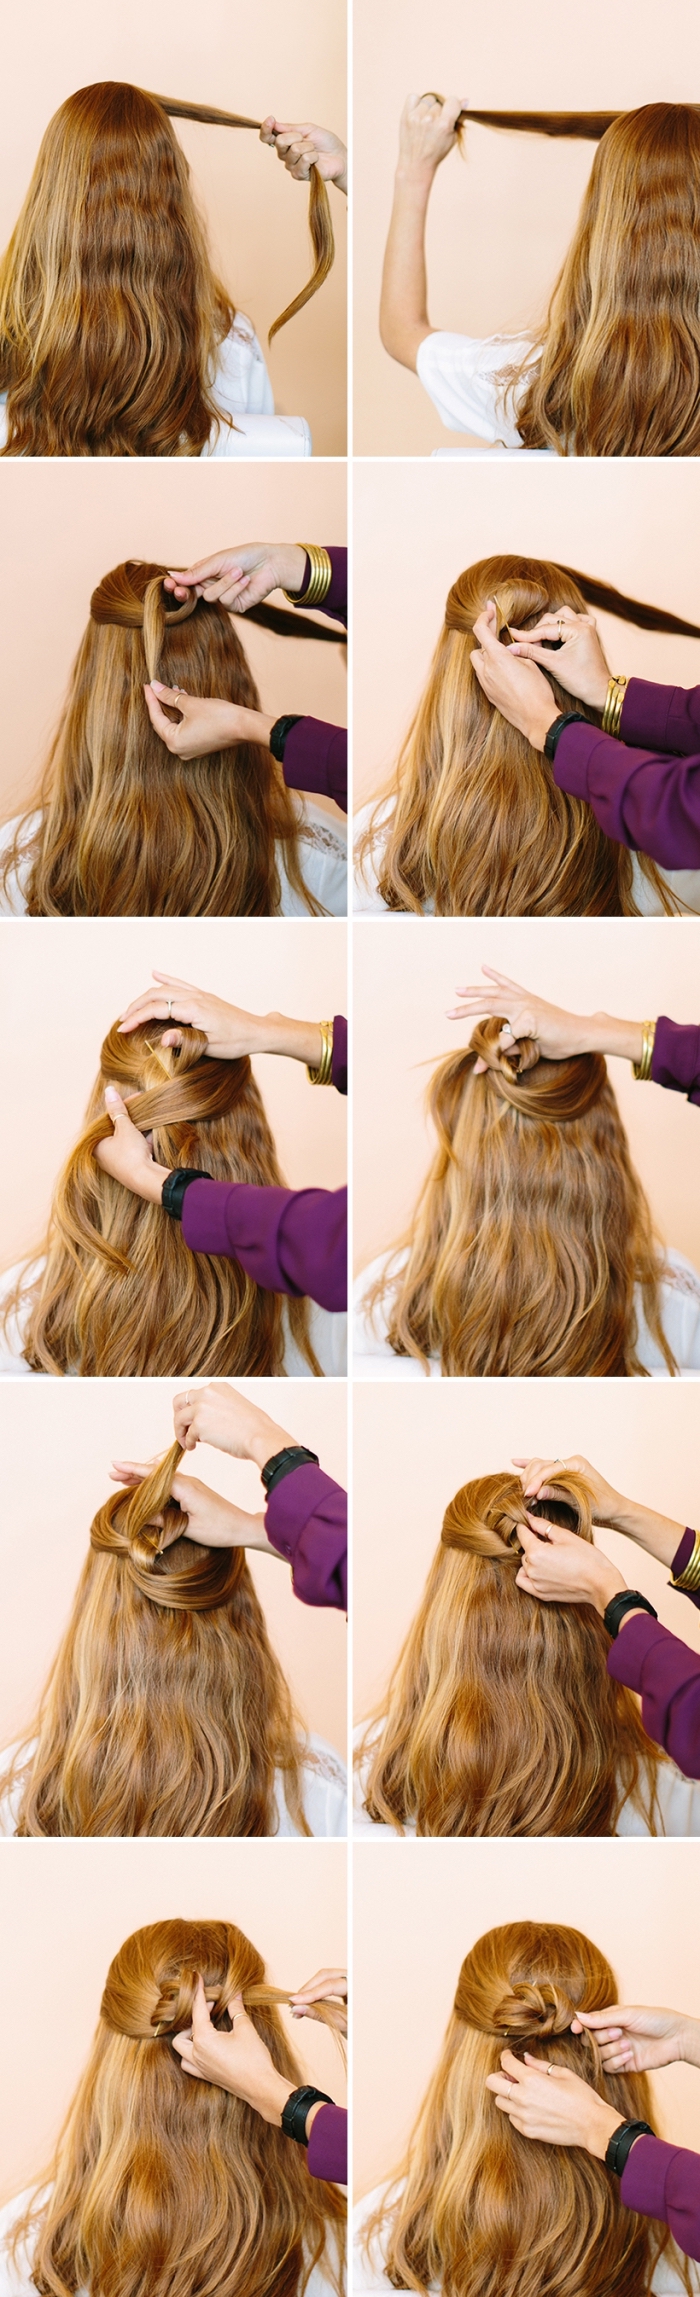 une coiffure féminine avec les mèches de côté, mèches entortillées en arrière de la tête pour en faire une rose de cheveux